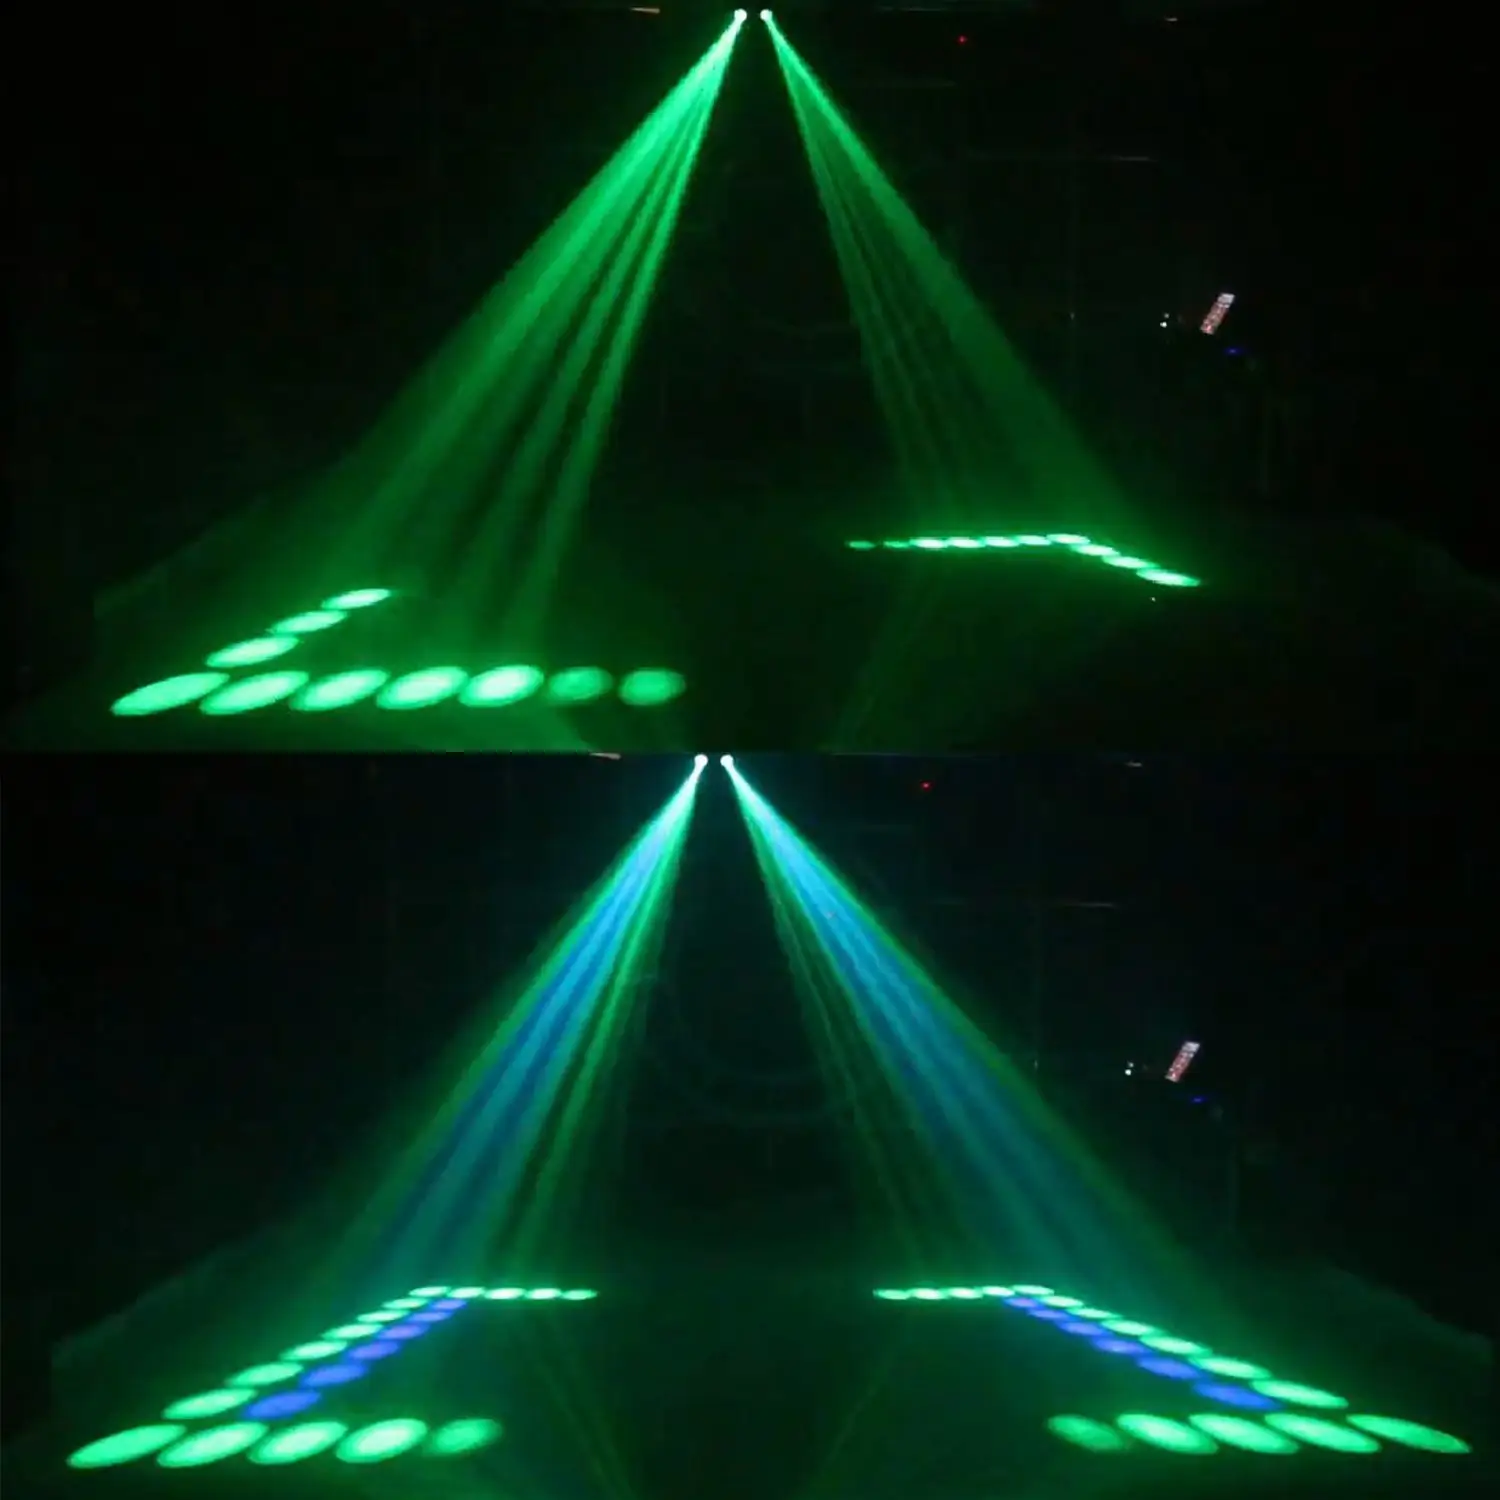 Bifi-светодиодные Портативный музыка Авто/звук активированная операционная система 128 светодиодный RGBW огней двойной головкой лазерный сценический эффект освещения клуб диско DJ вечерние бар КТВ